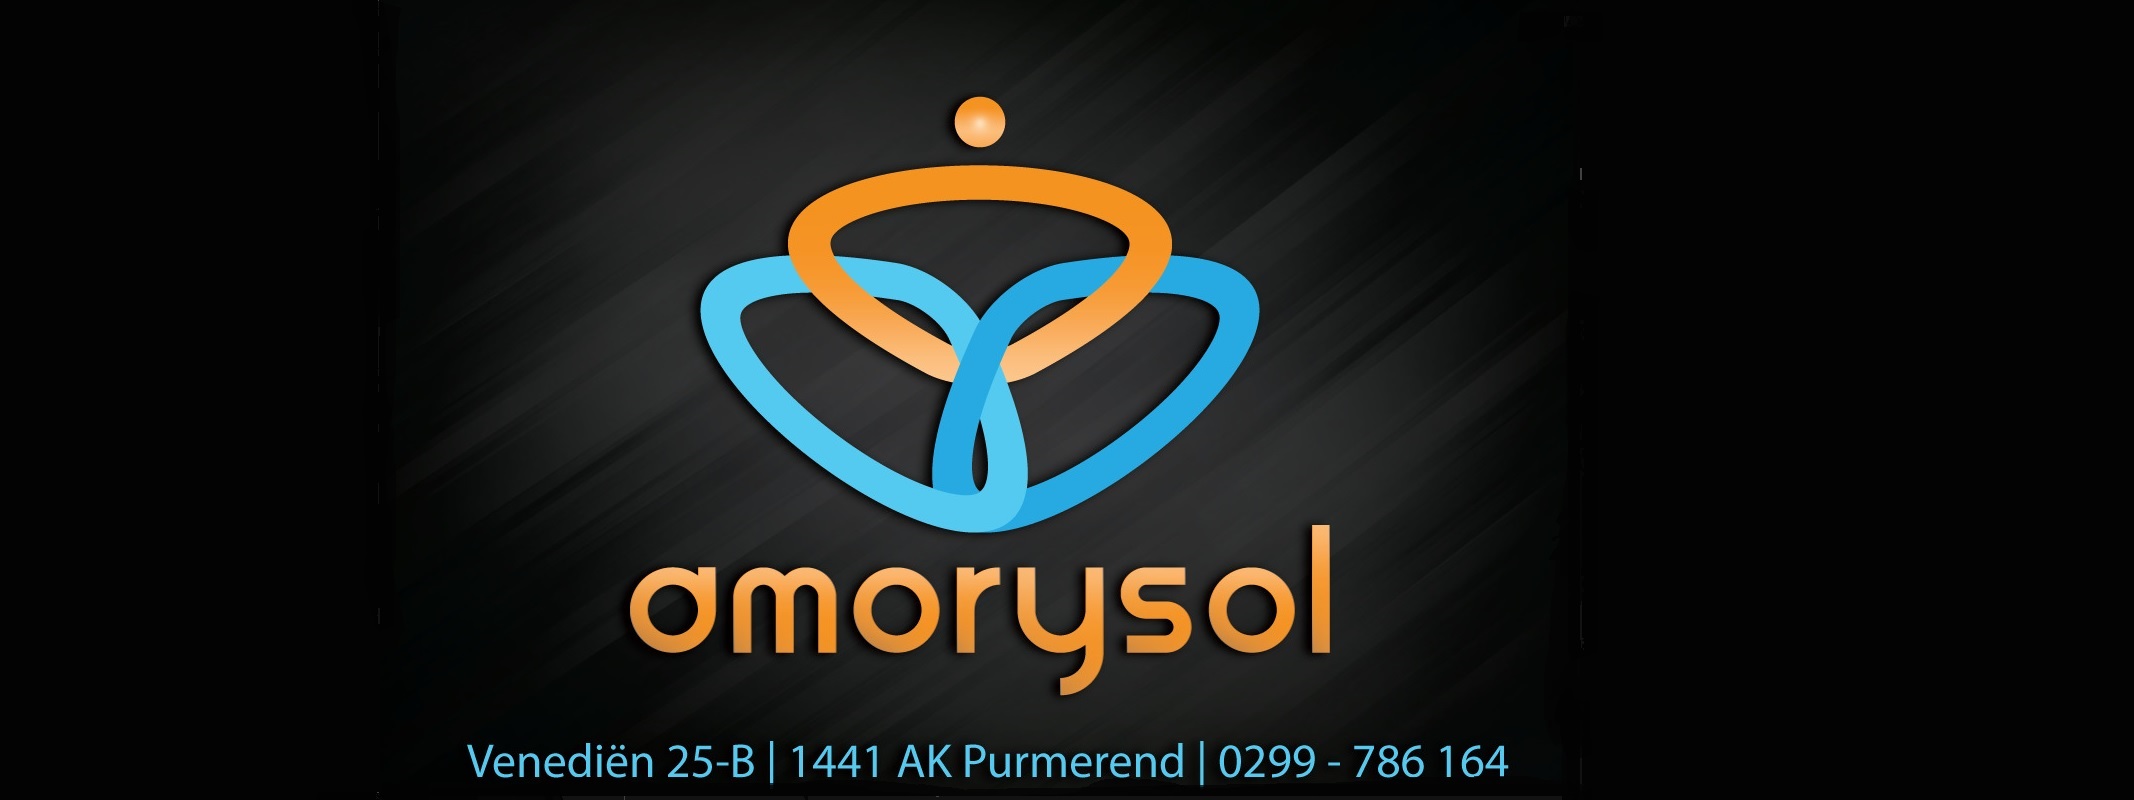 Amorysol-1.jpg